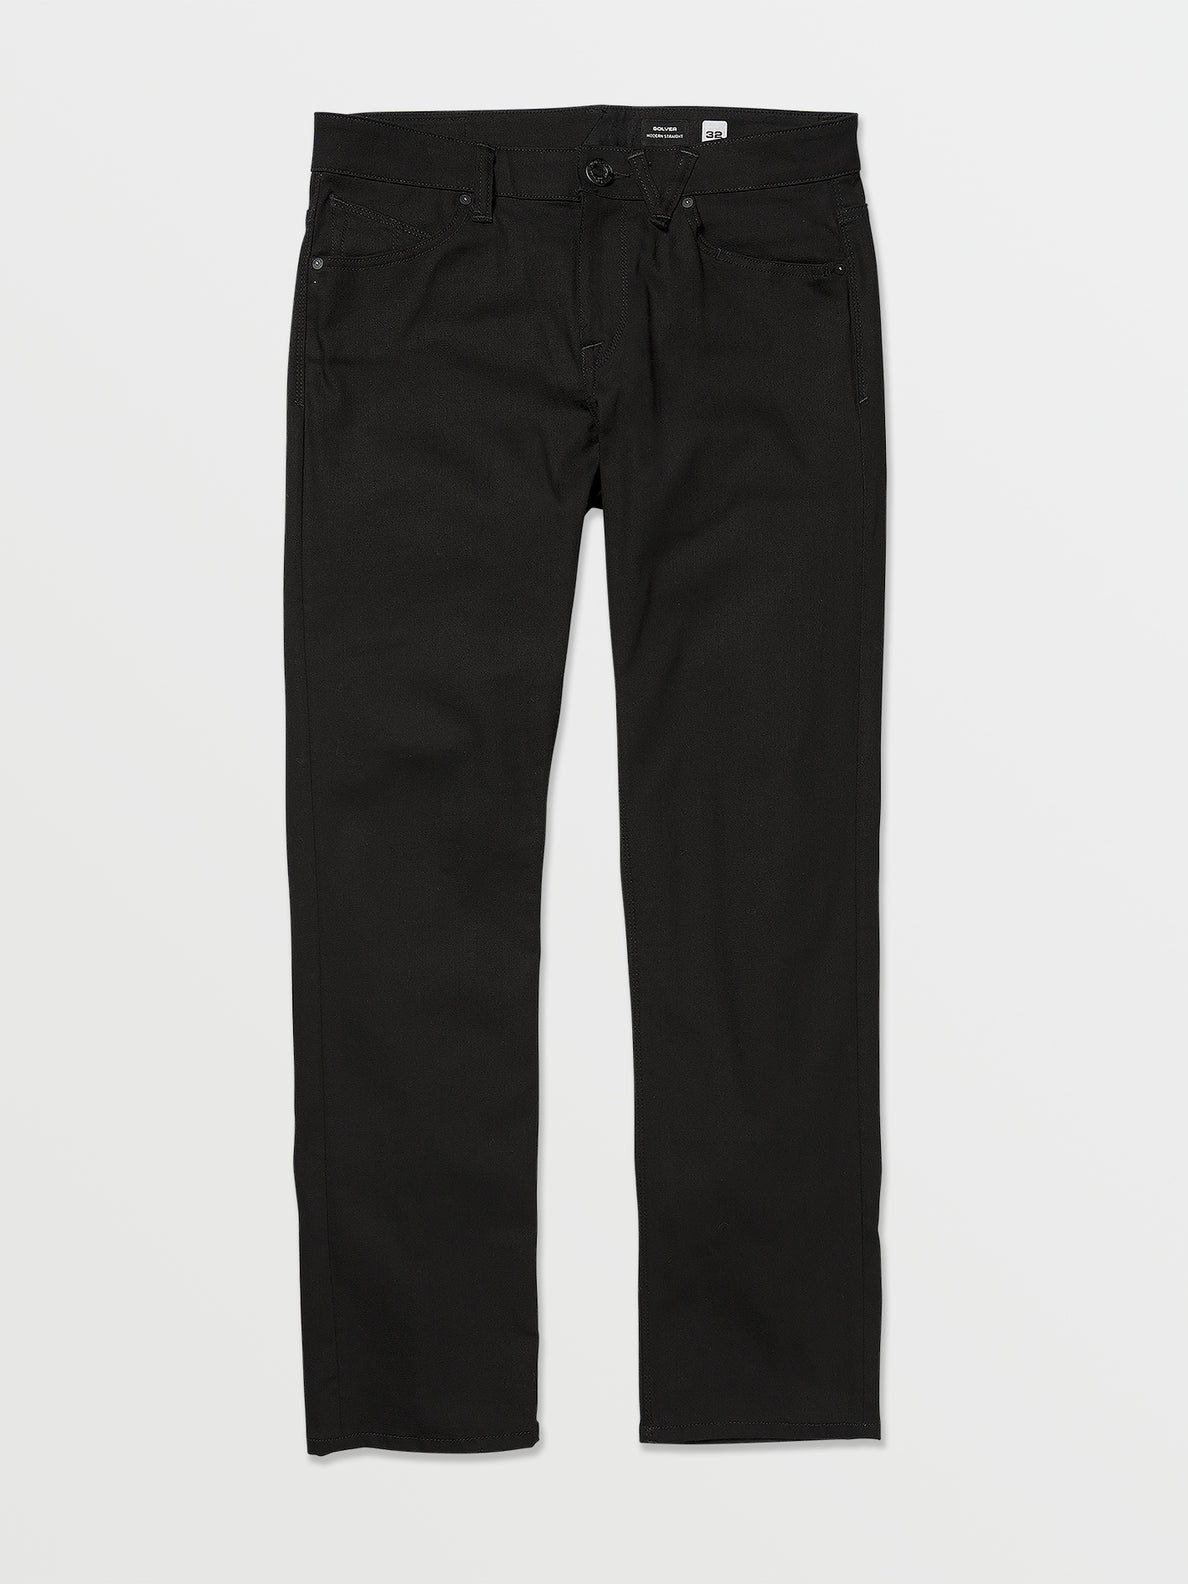 Solver Denim Pants - Black on Black (A1912303_BKB) [F]